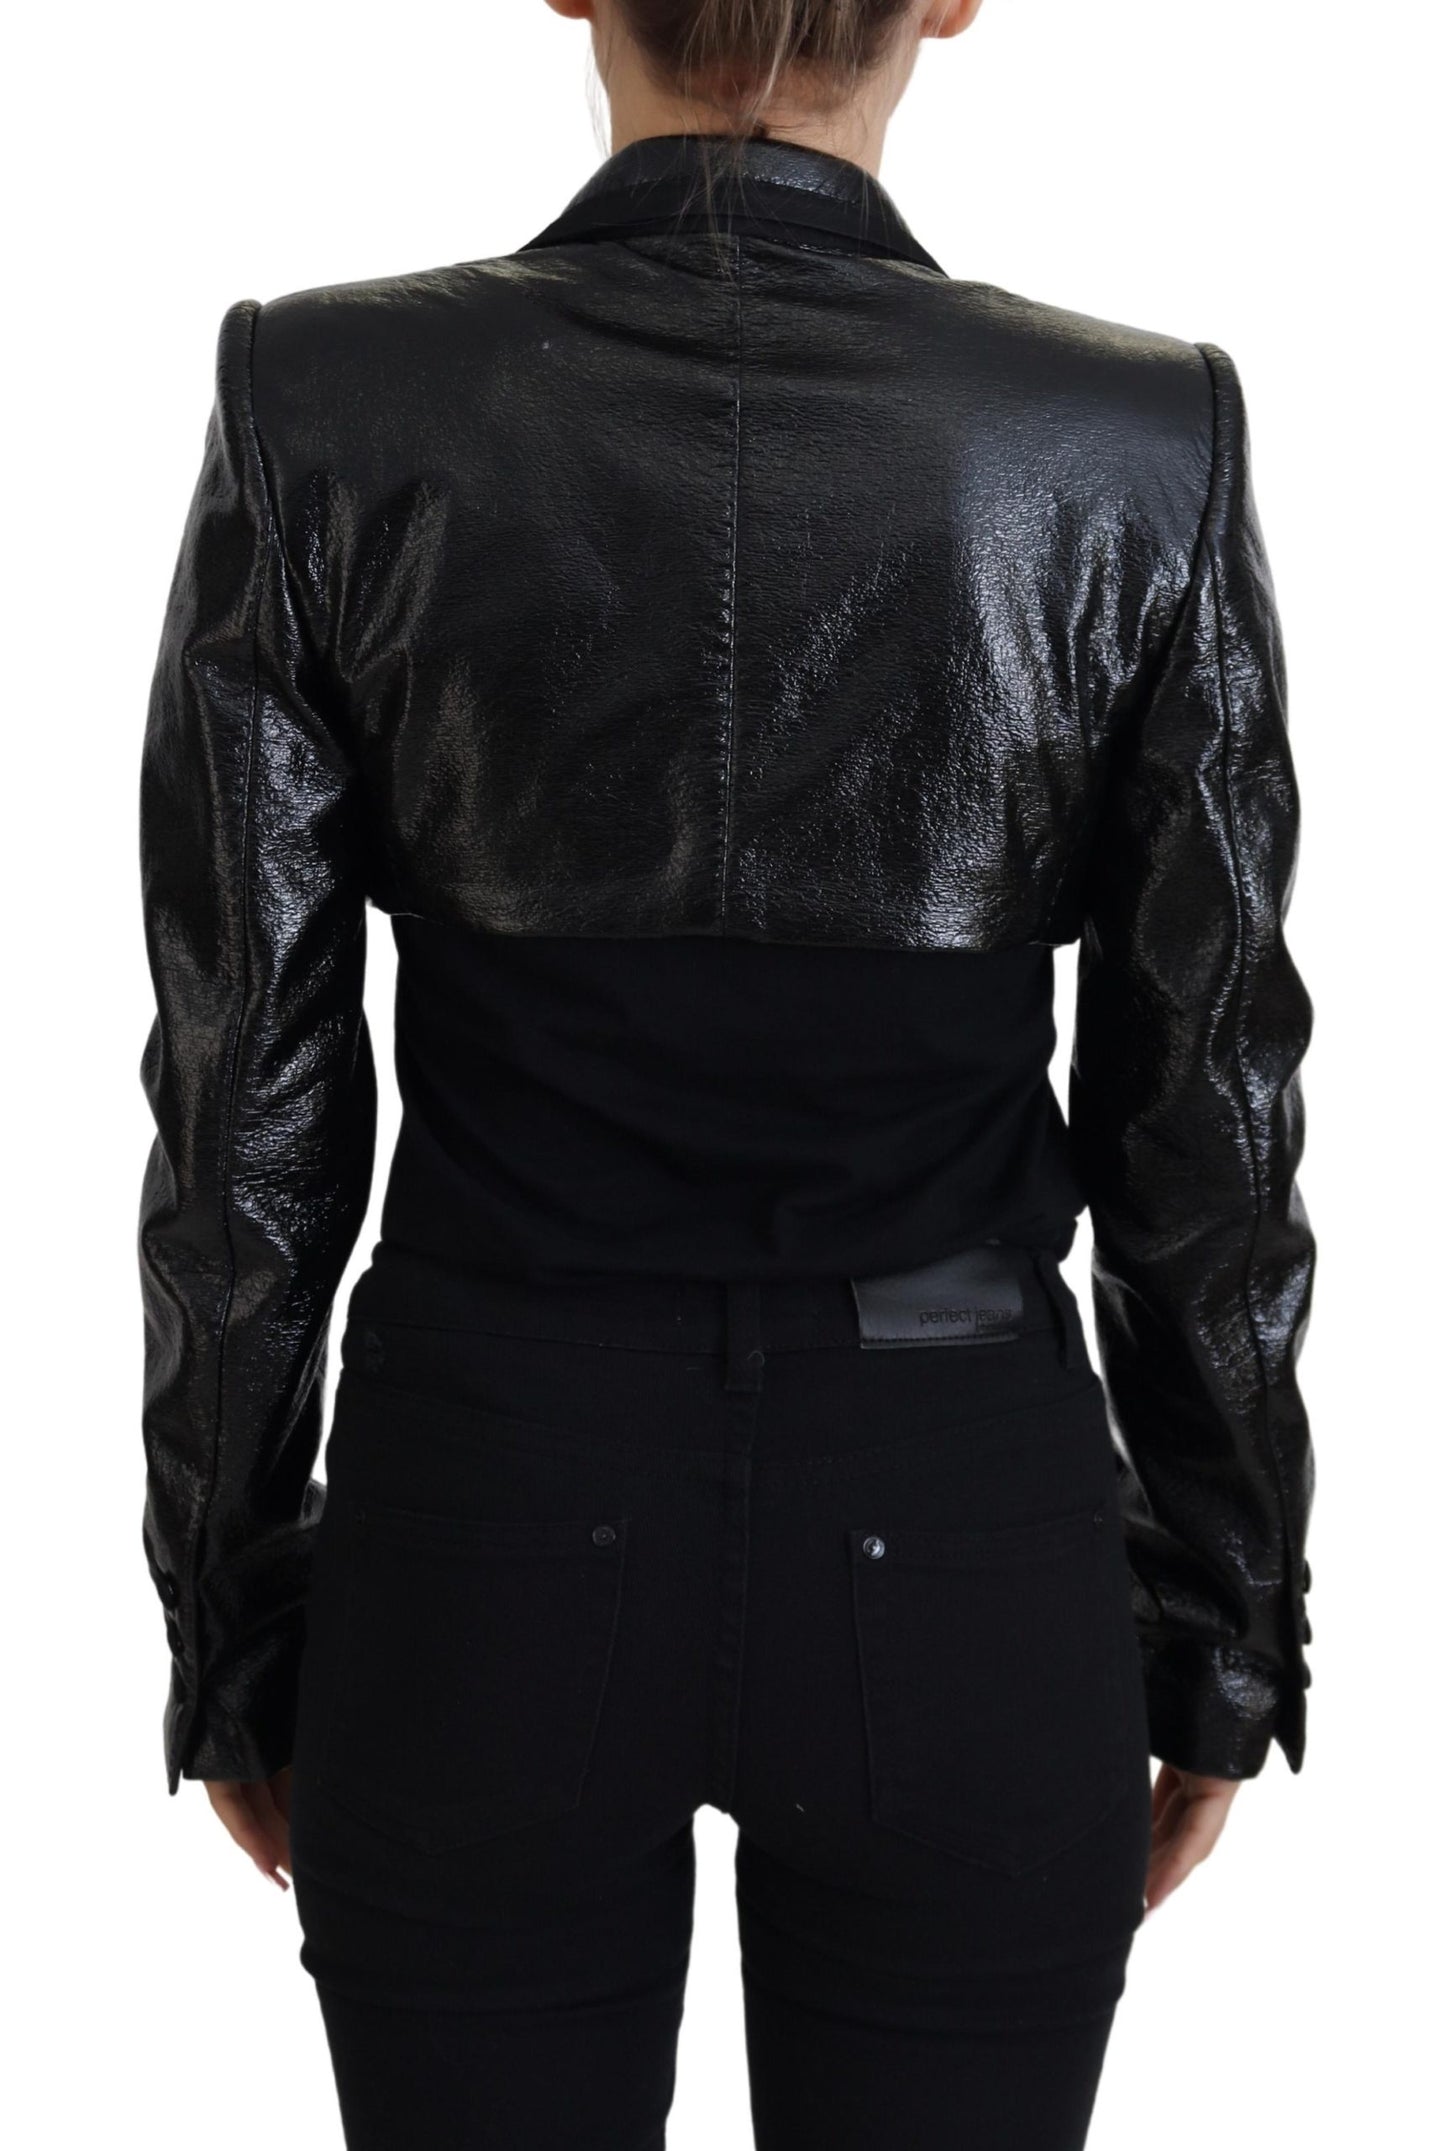 Dolce & Gabbana Elegant Cropped Black Designer Jacket